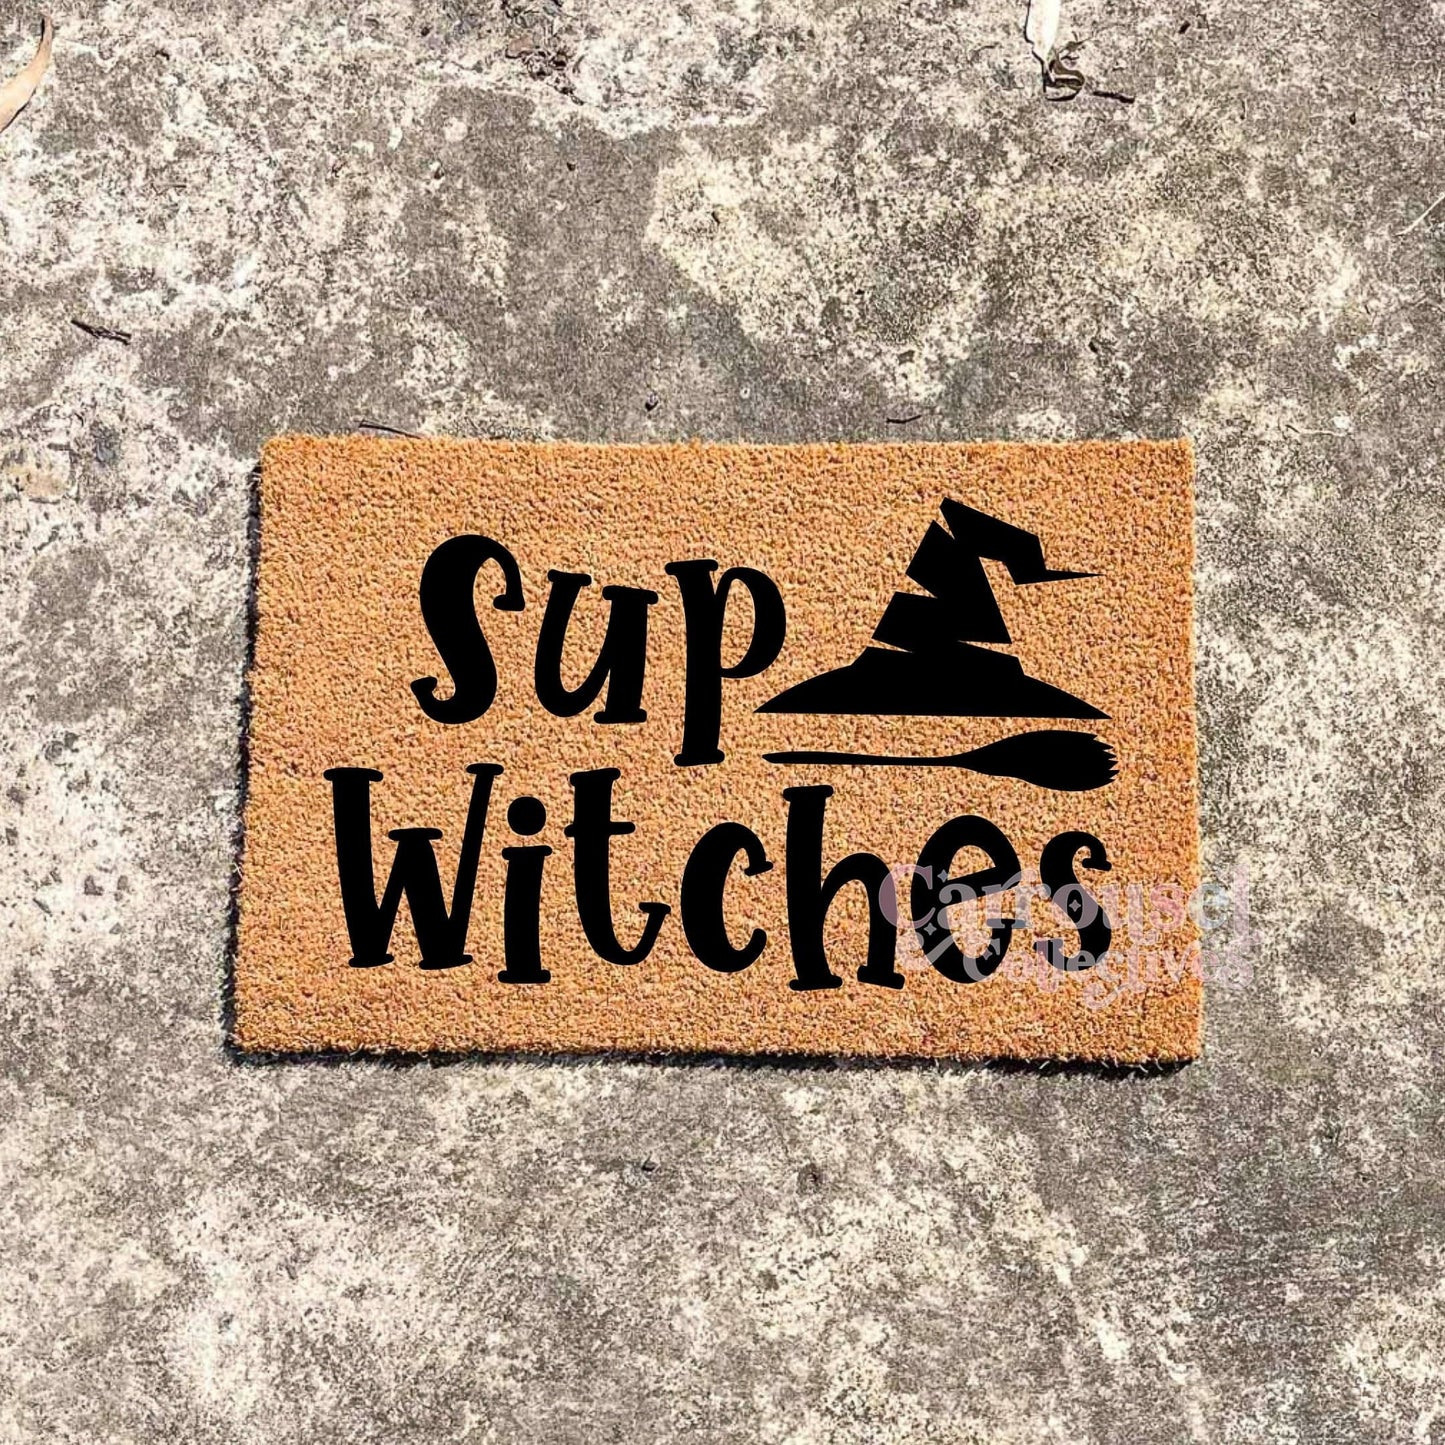 Sup Witches doormat, Halloween Doormat, Spooky Doormat, Creepy Doormat